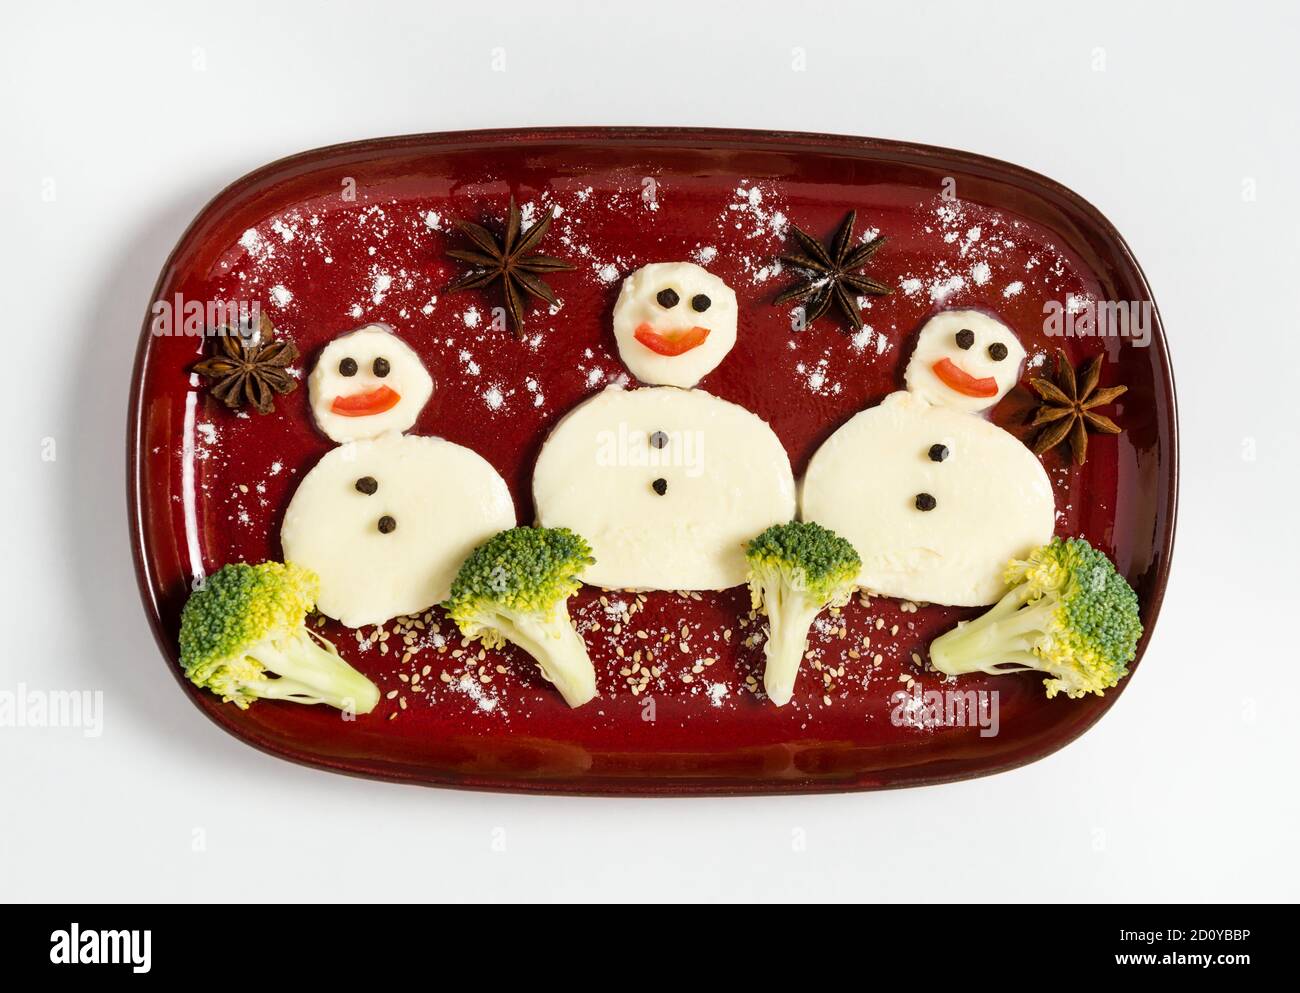 Lustiger Teller mit drei Schneemännern aus Mozzarella und Brokkoli. Frühstücksidee für Kinder. Vegetarisches Essen für Neujahr oder Weihnachtsfeier. Stockfoto